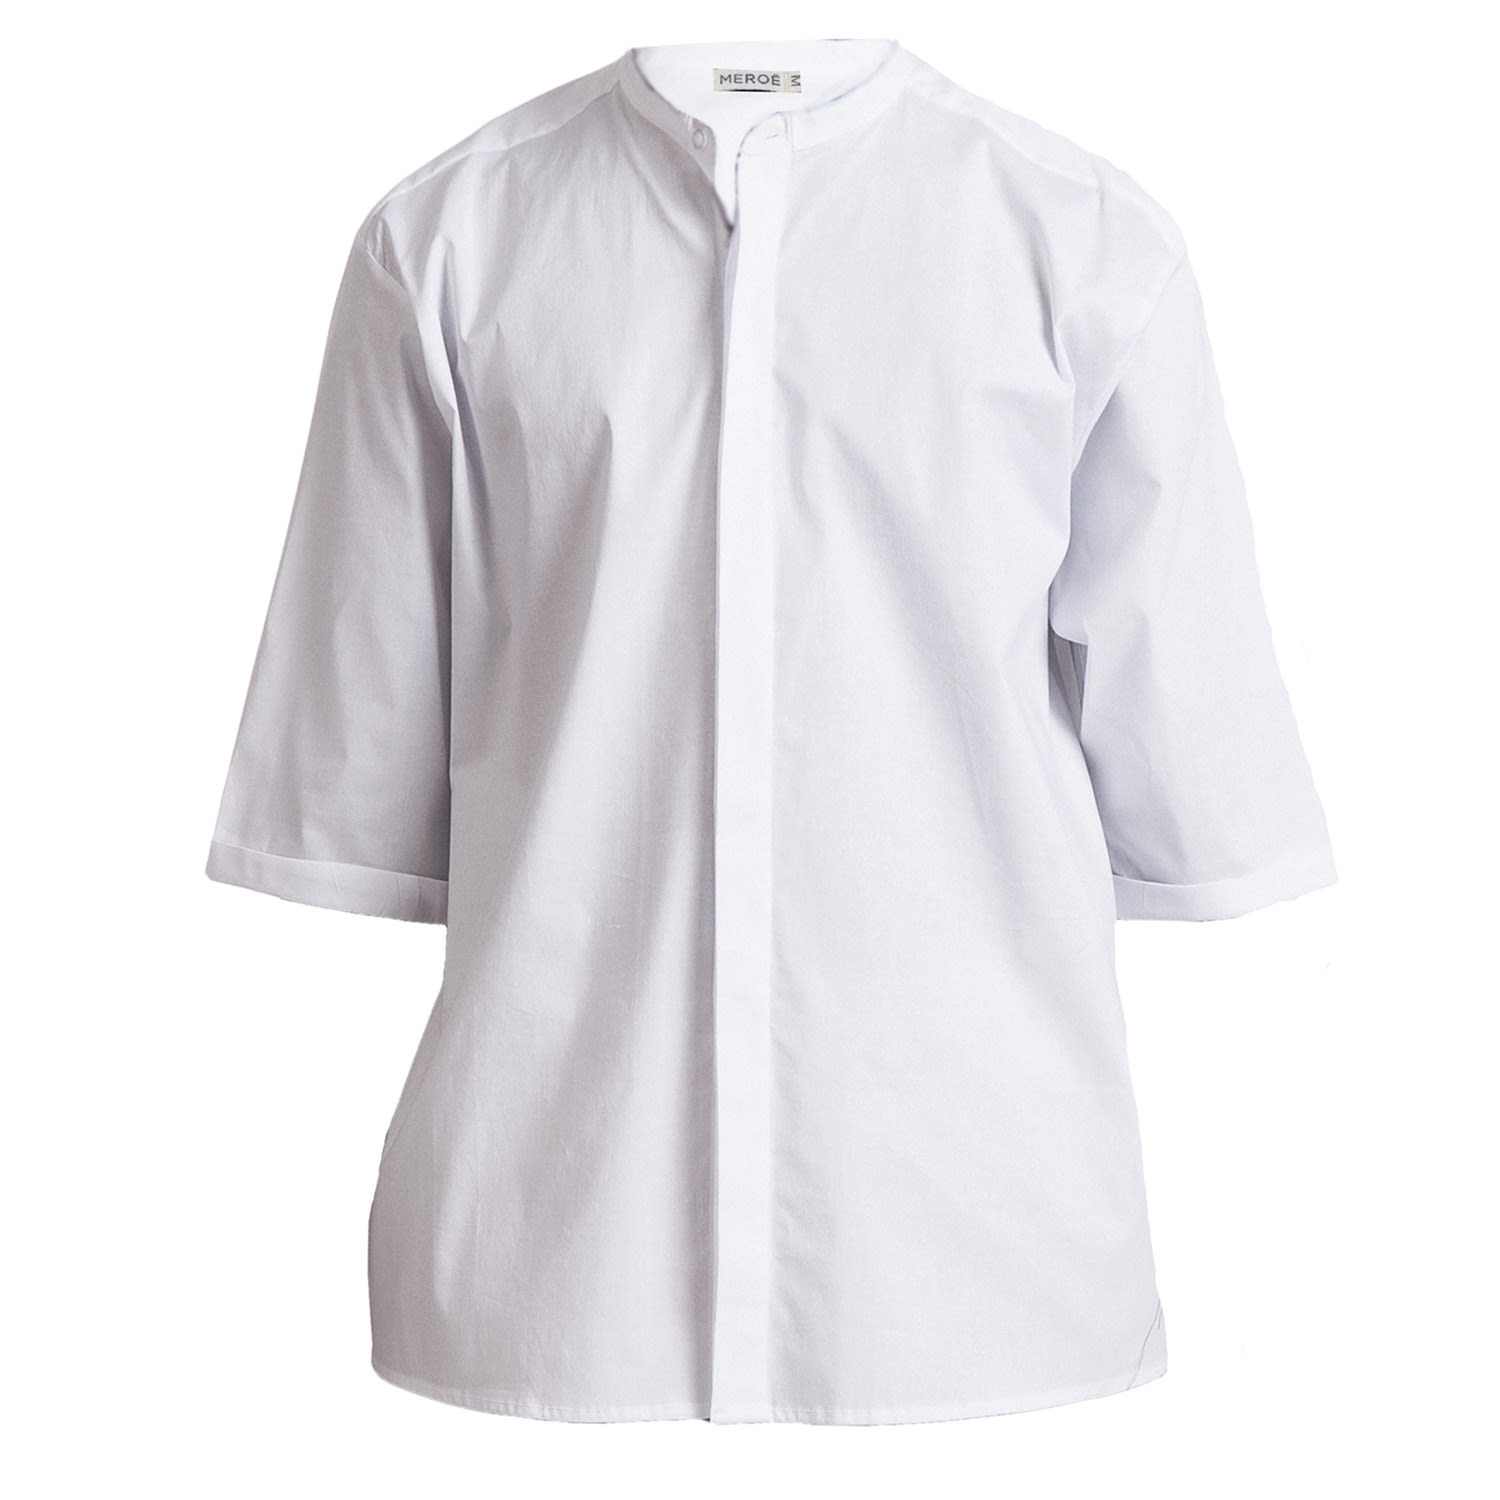 Men's White Oversized Grand Collar Shirt Medium MEROË